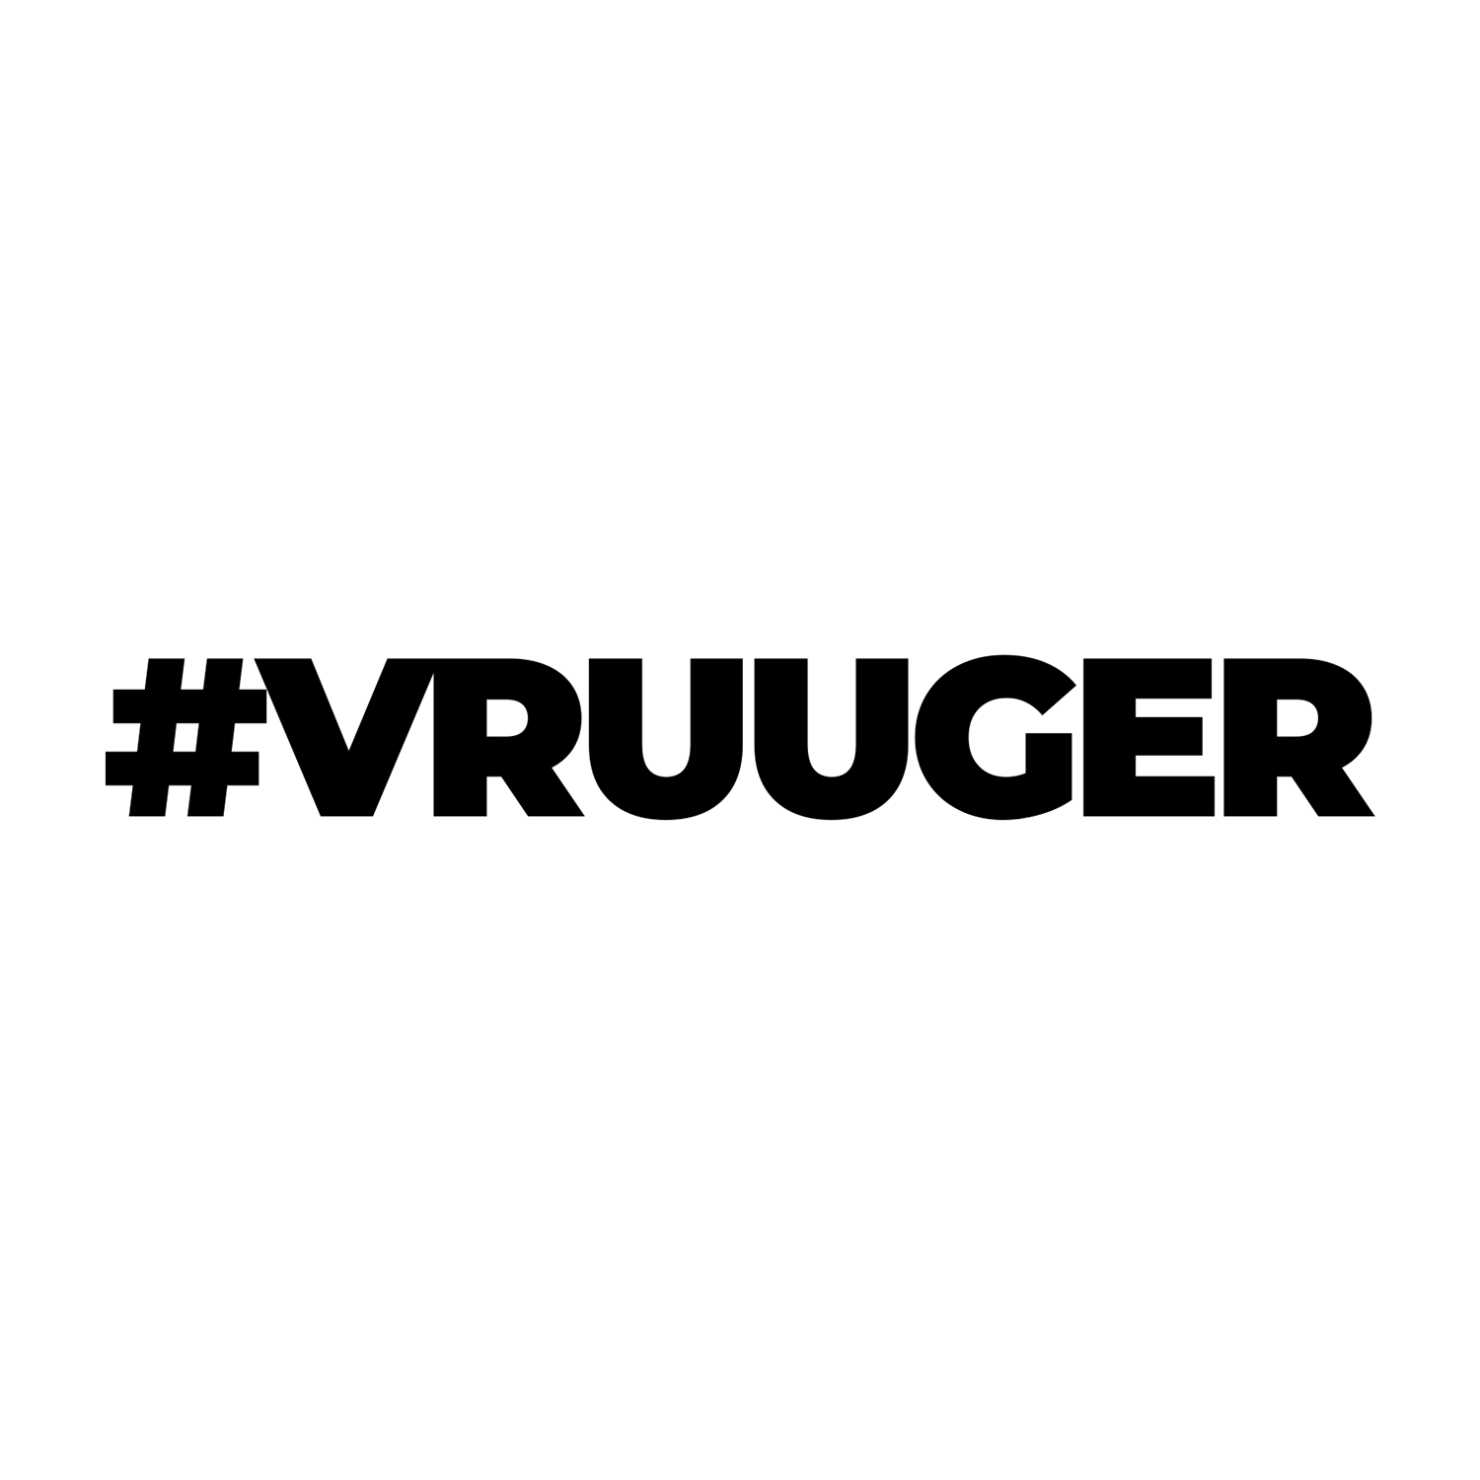 #VRUUGER